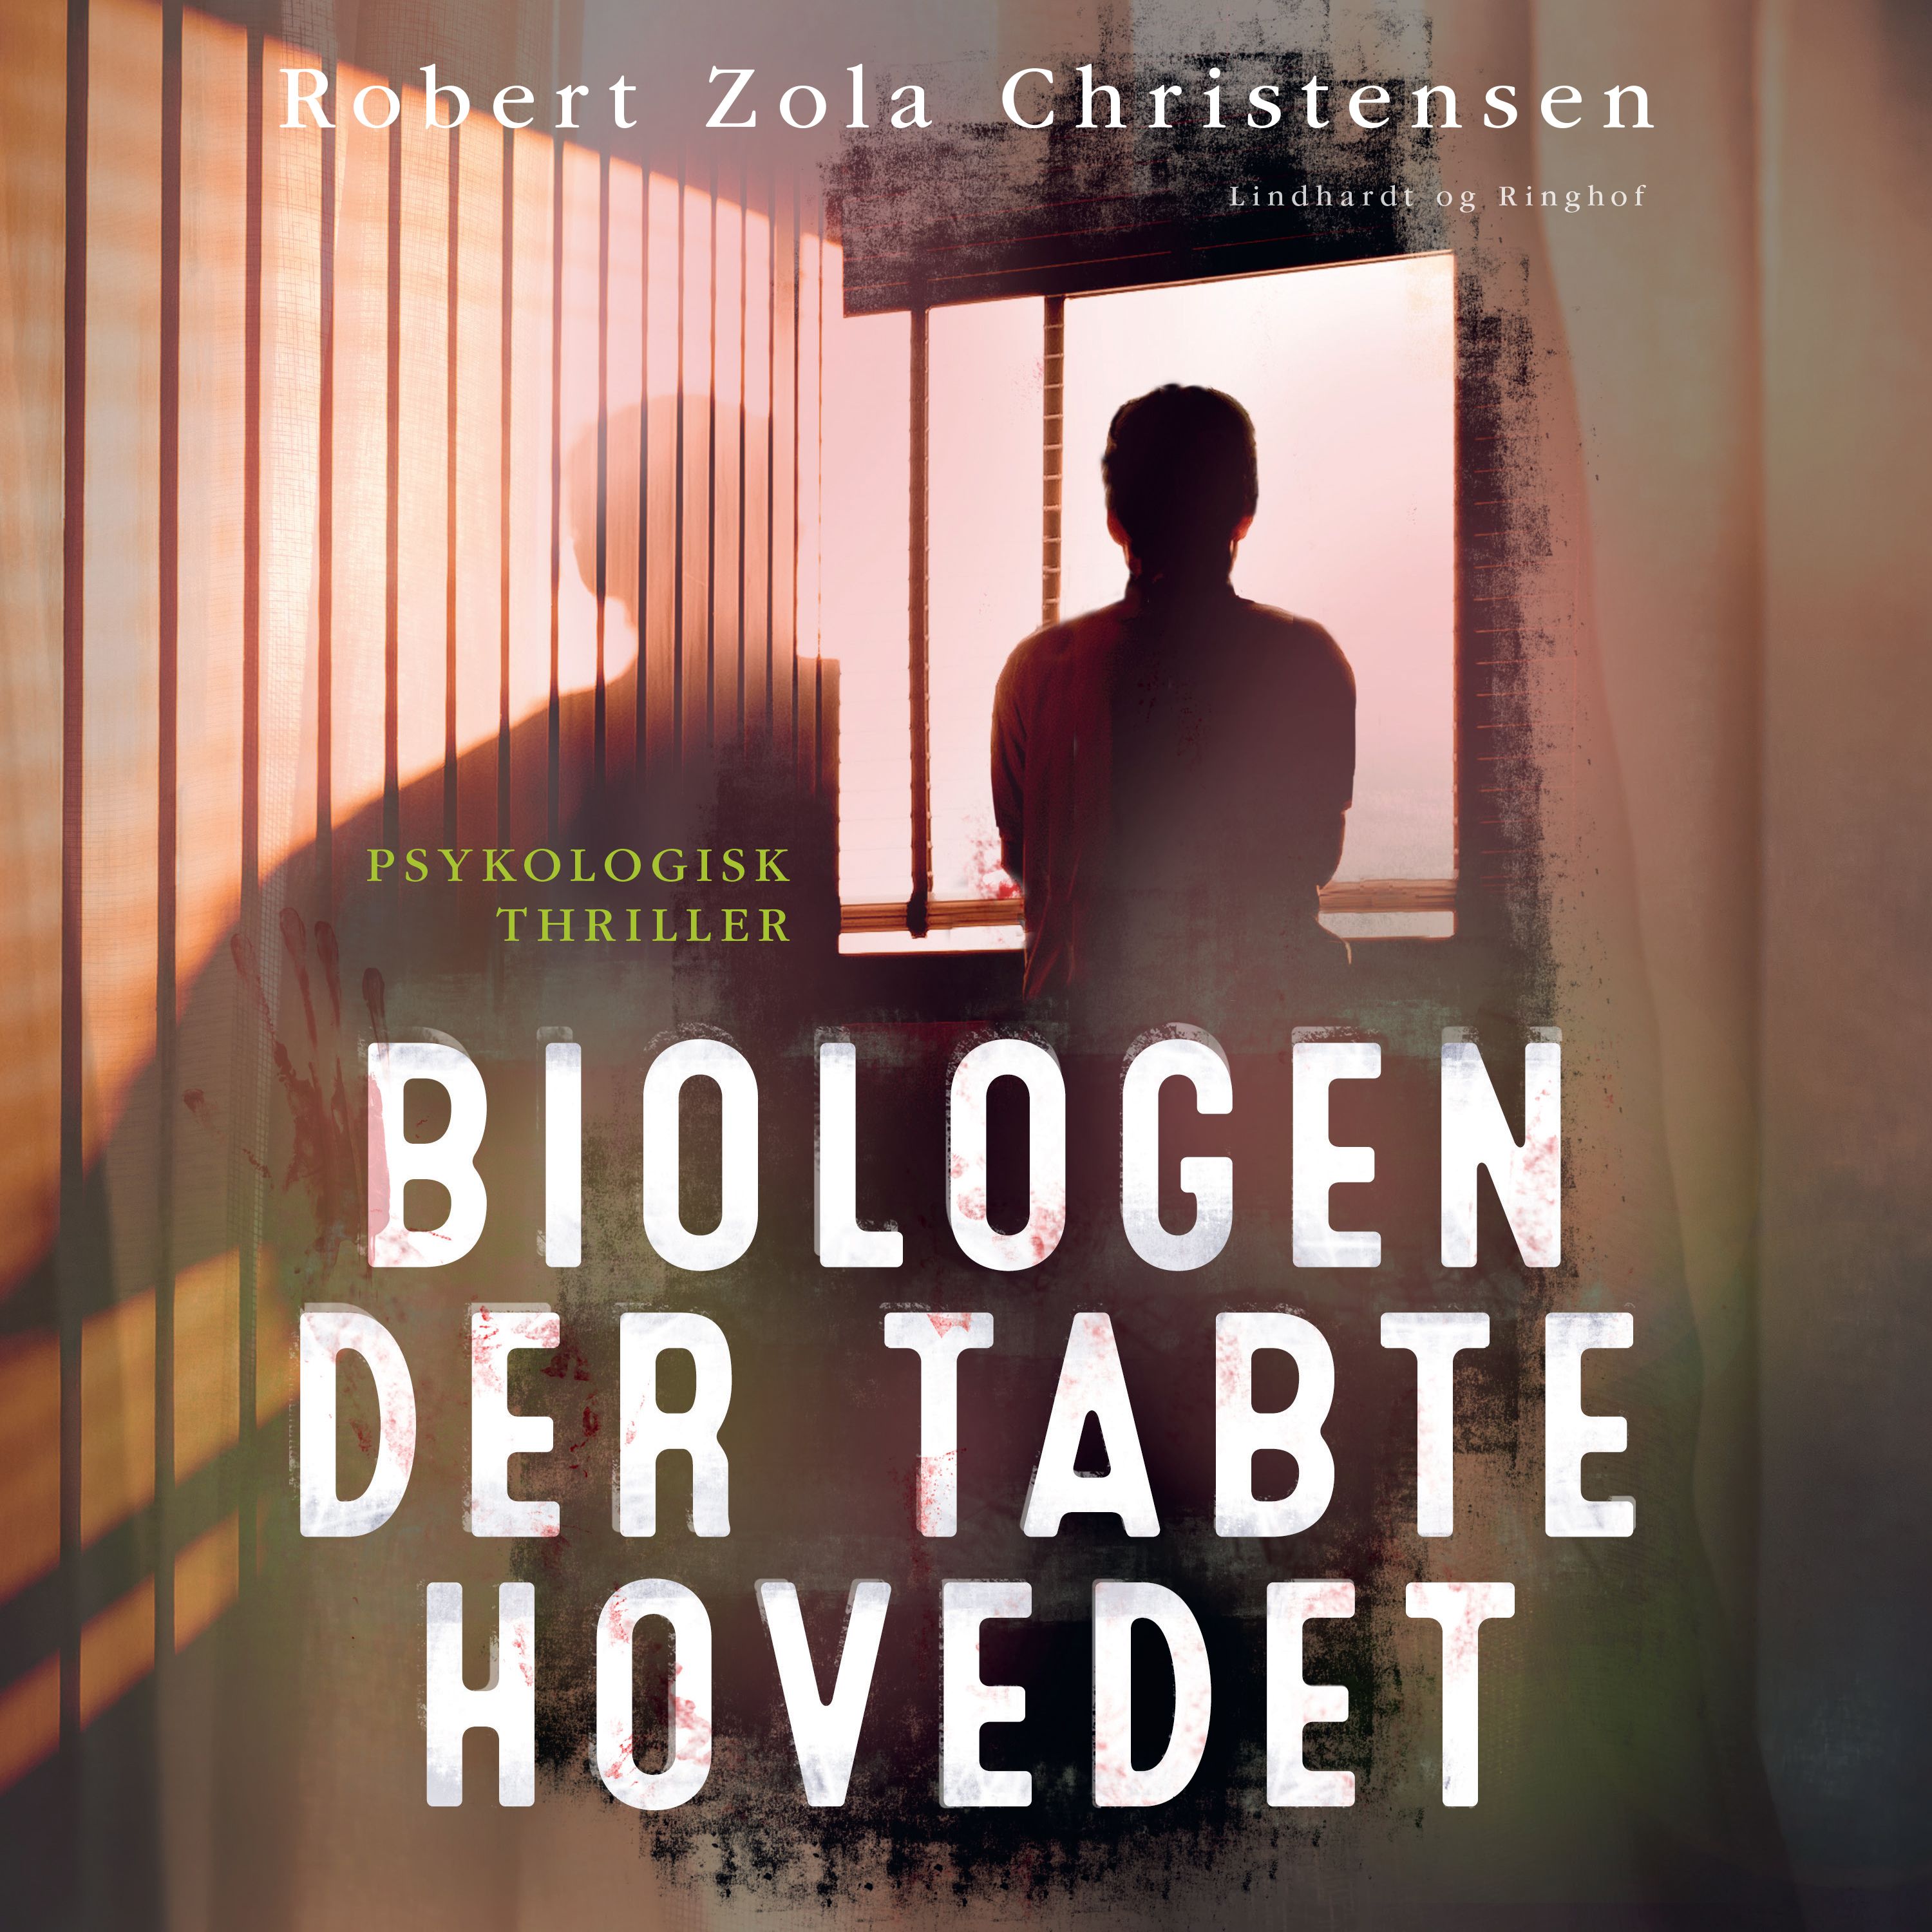 Biologen der tabte hovedet, lydbog af Robert Zola Christensen